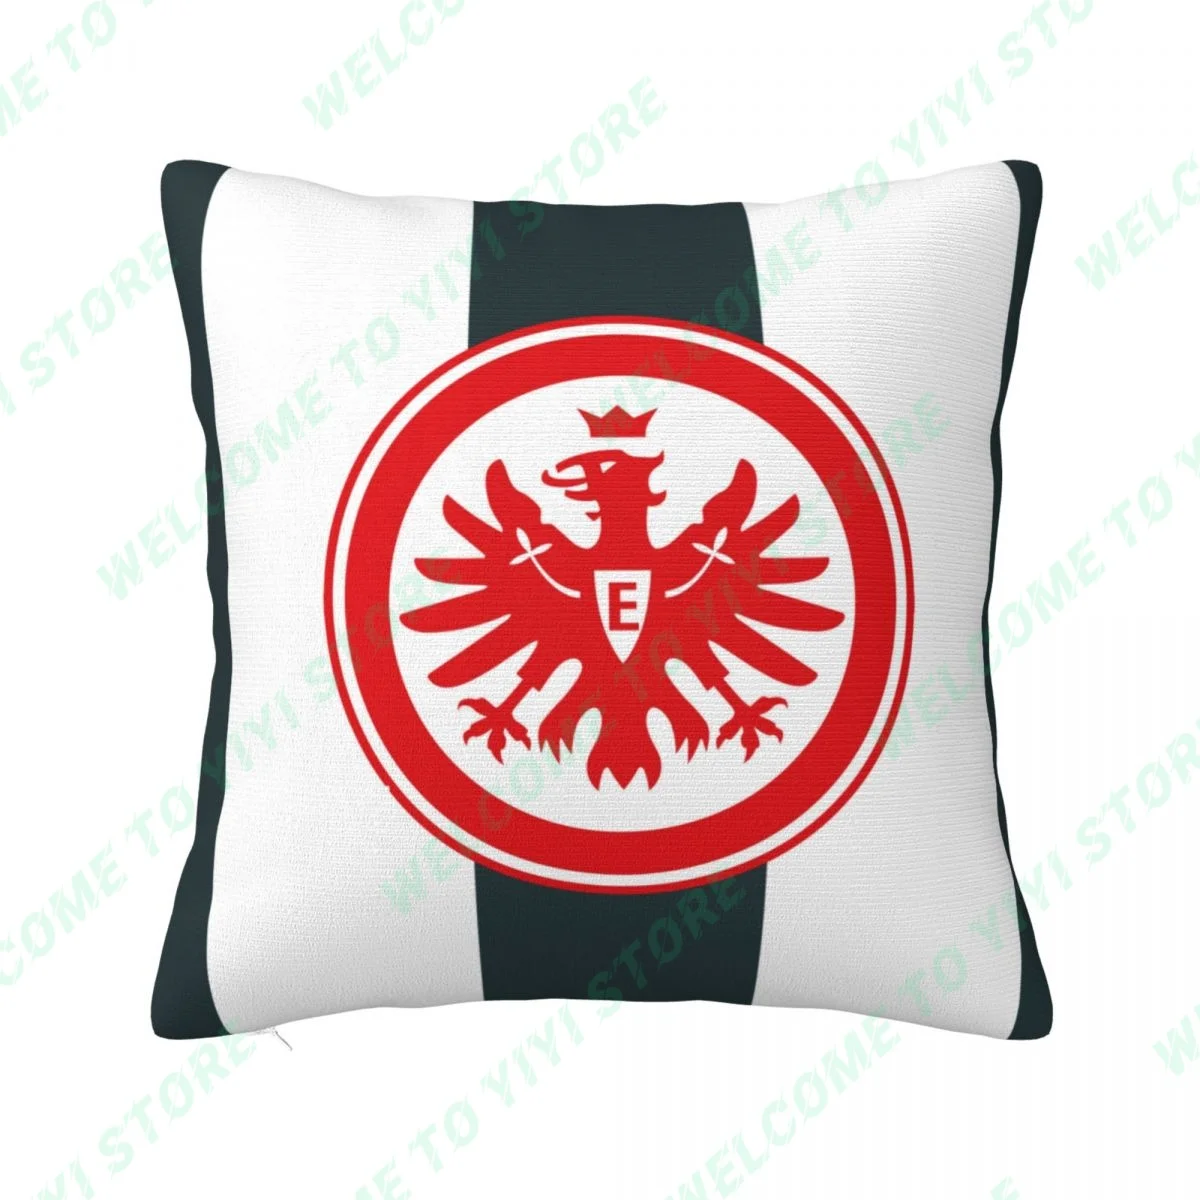 Nuovo Eintracht francoforte Fuball AG federa cuscino decorativo per auto divano soggiorno decorativo decorativo copricuscino